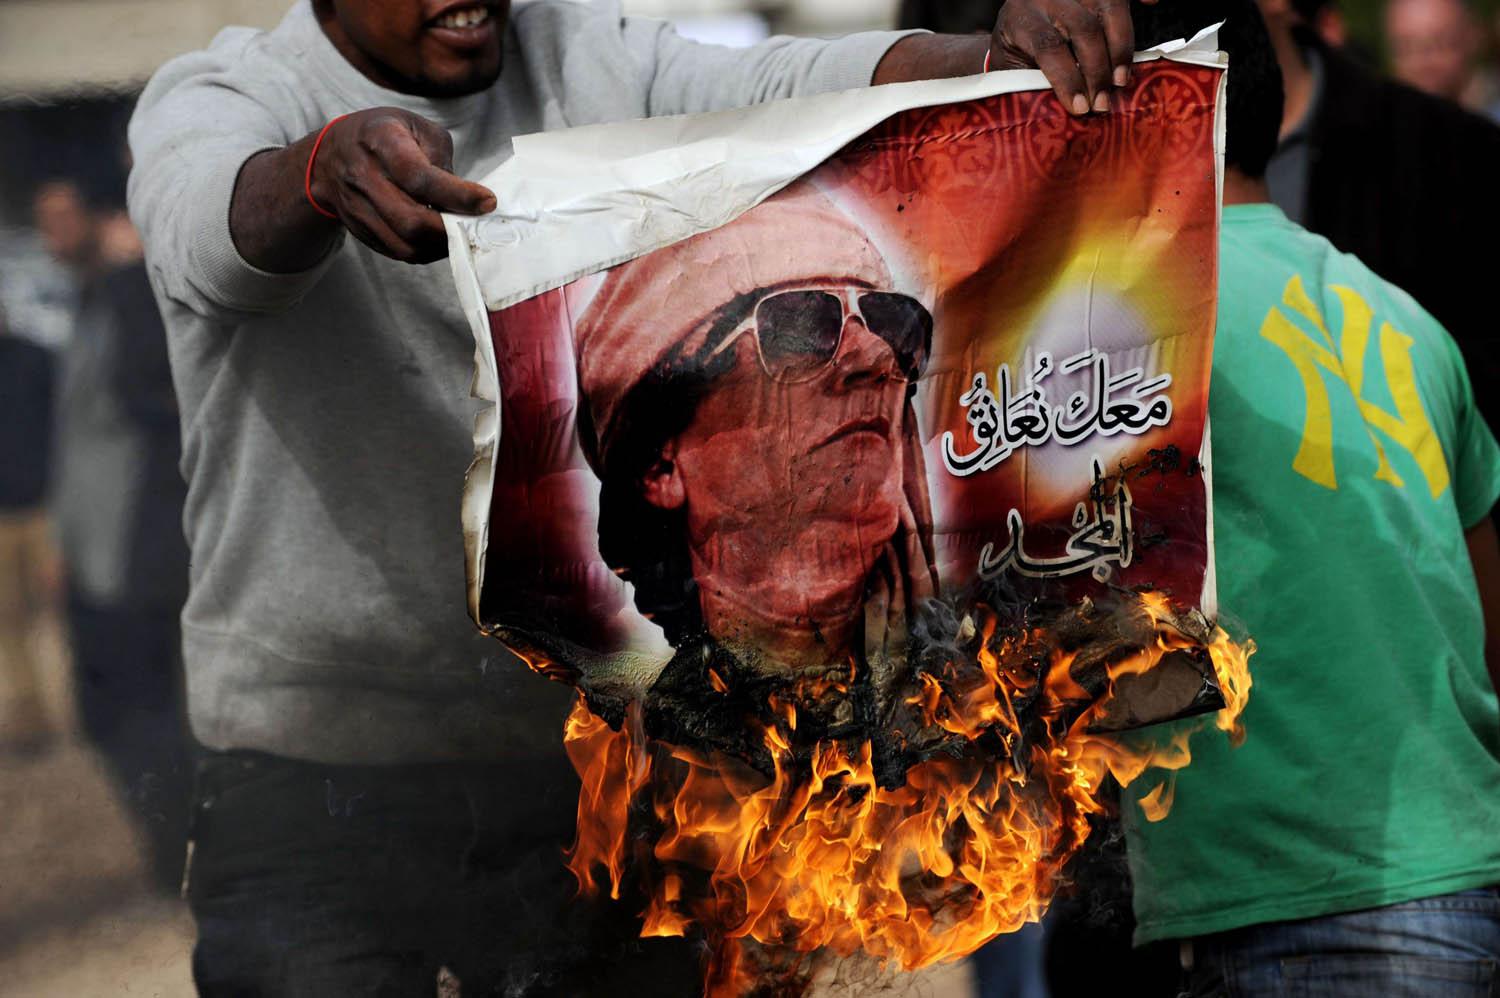 ليبي يحرق صورة للقذافي في بنغازي